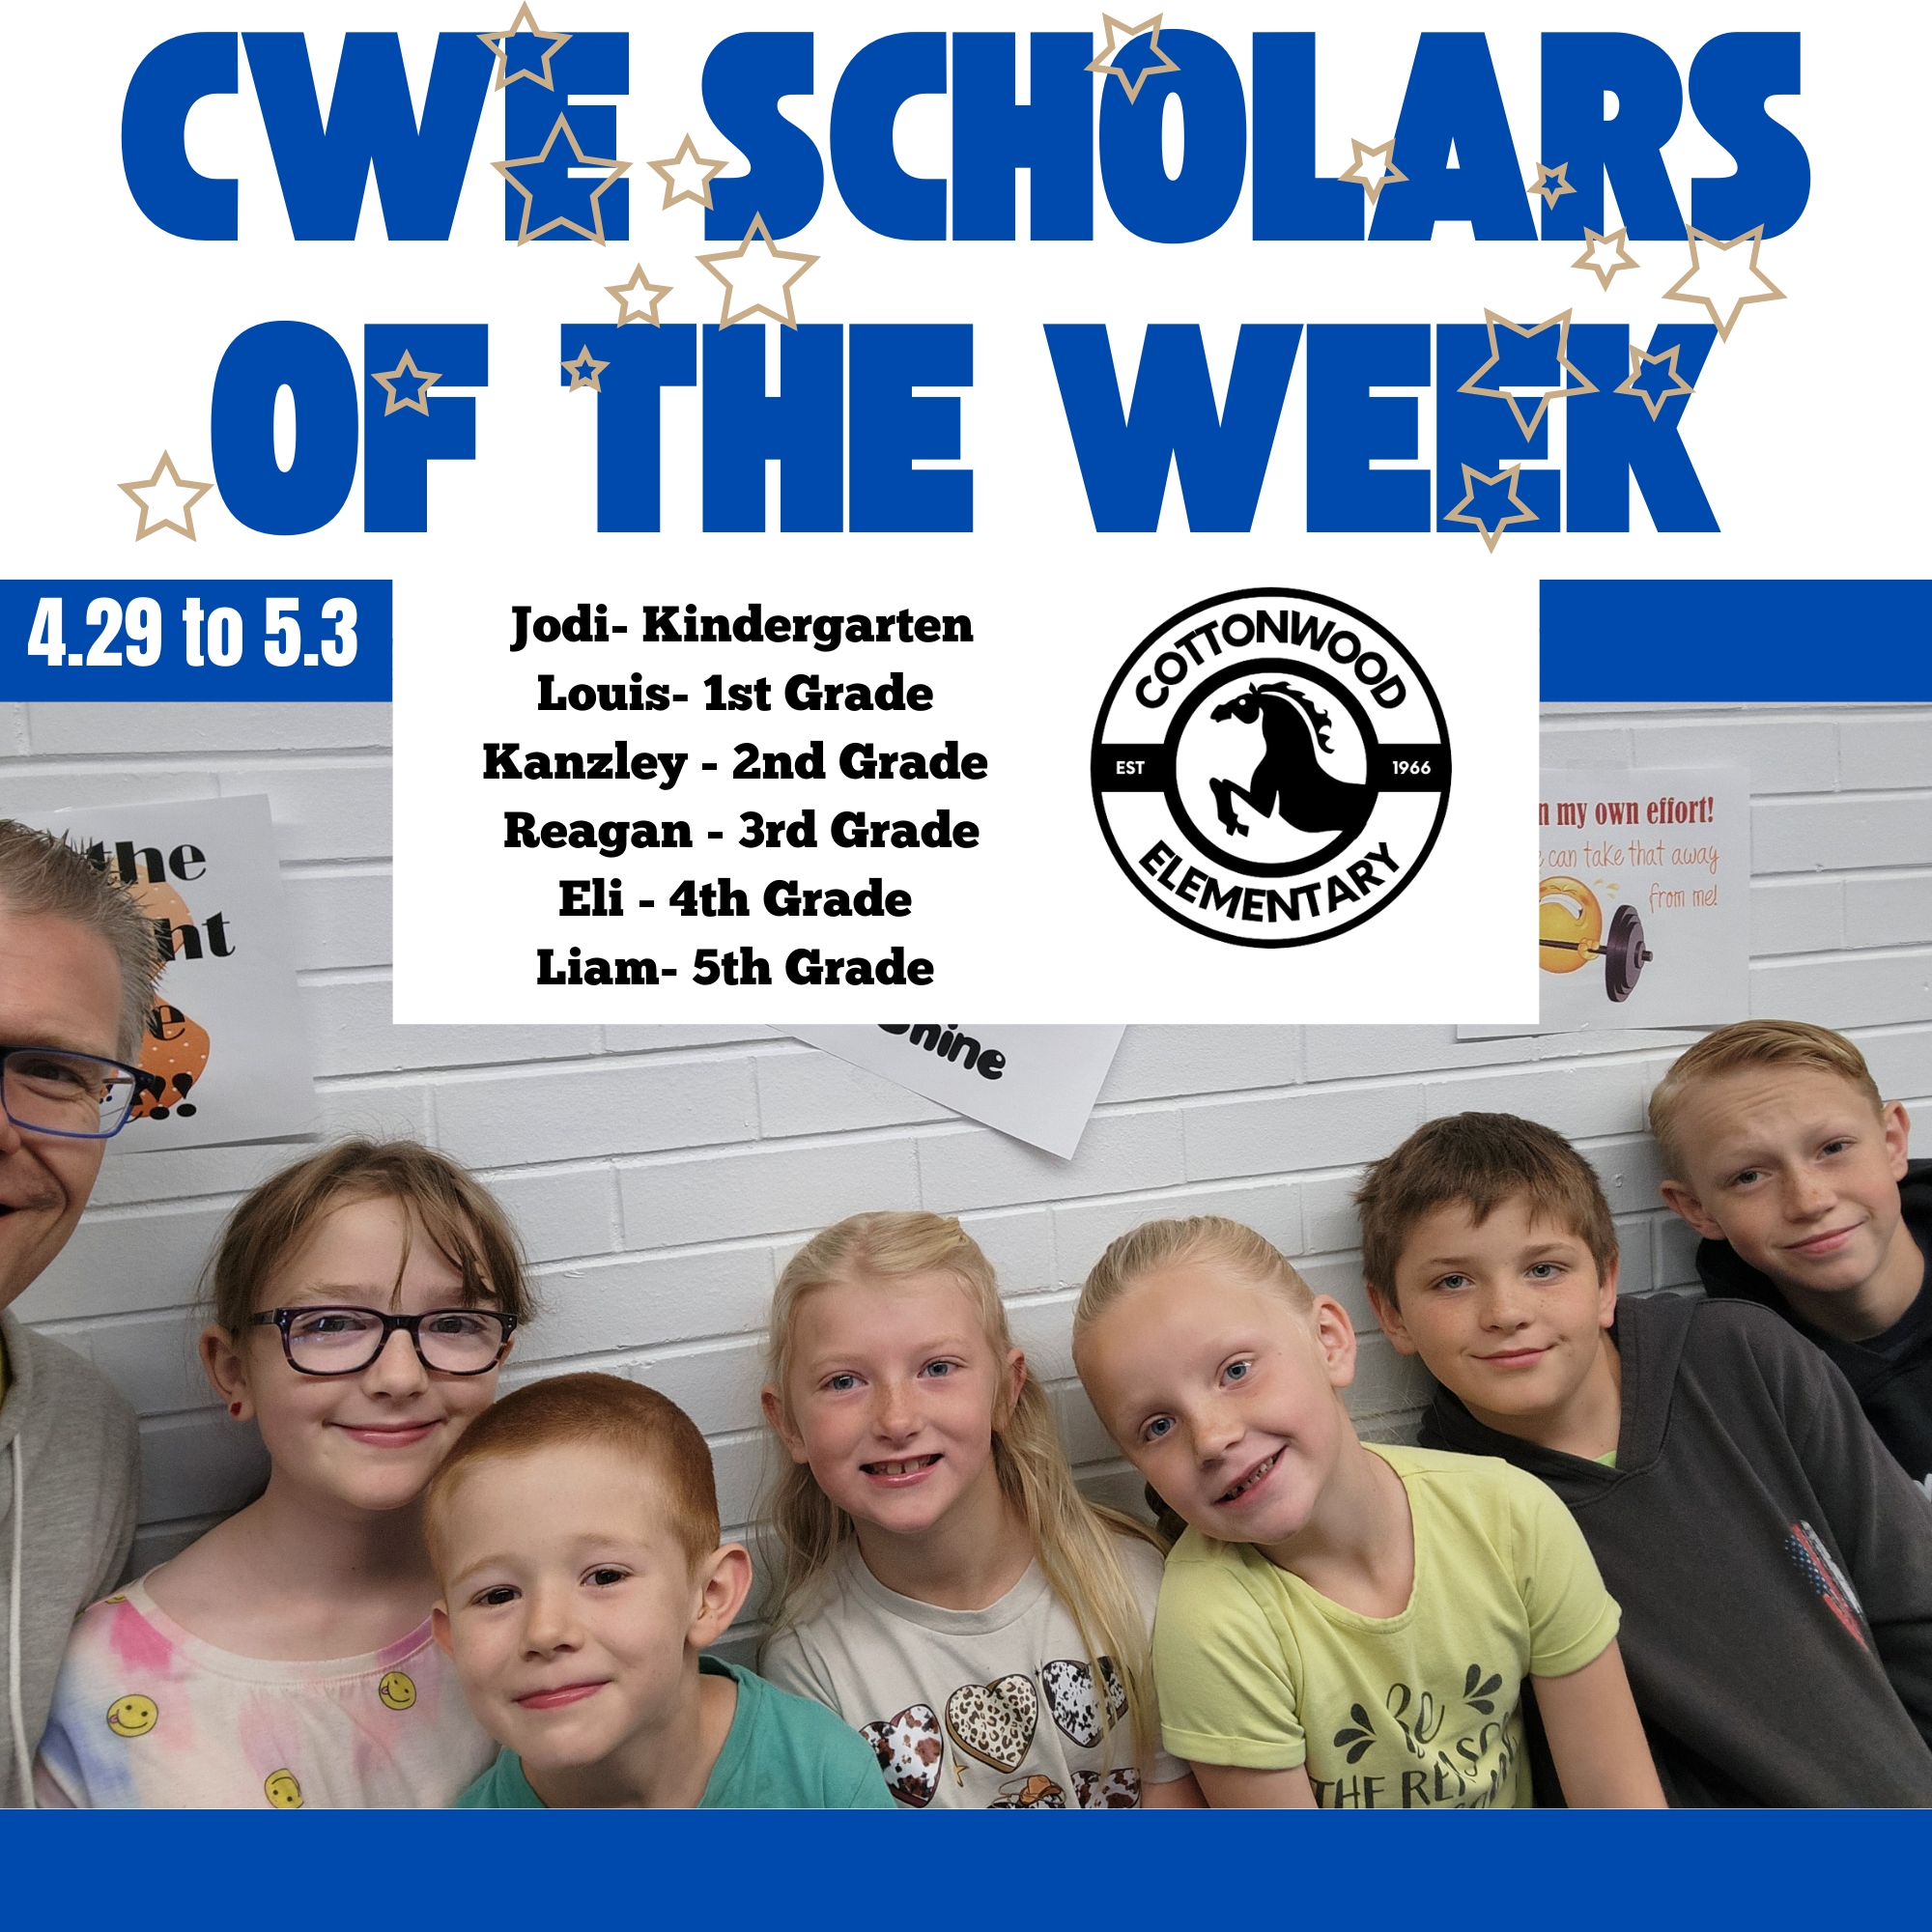 CWE-Scholars-of-the-Week-4.29-to-5.3.jpg